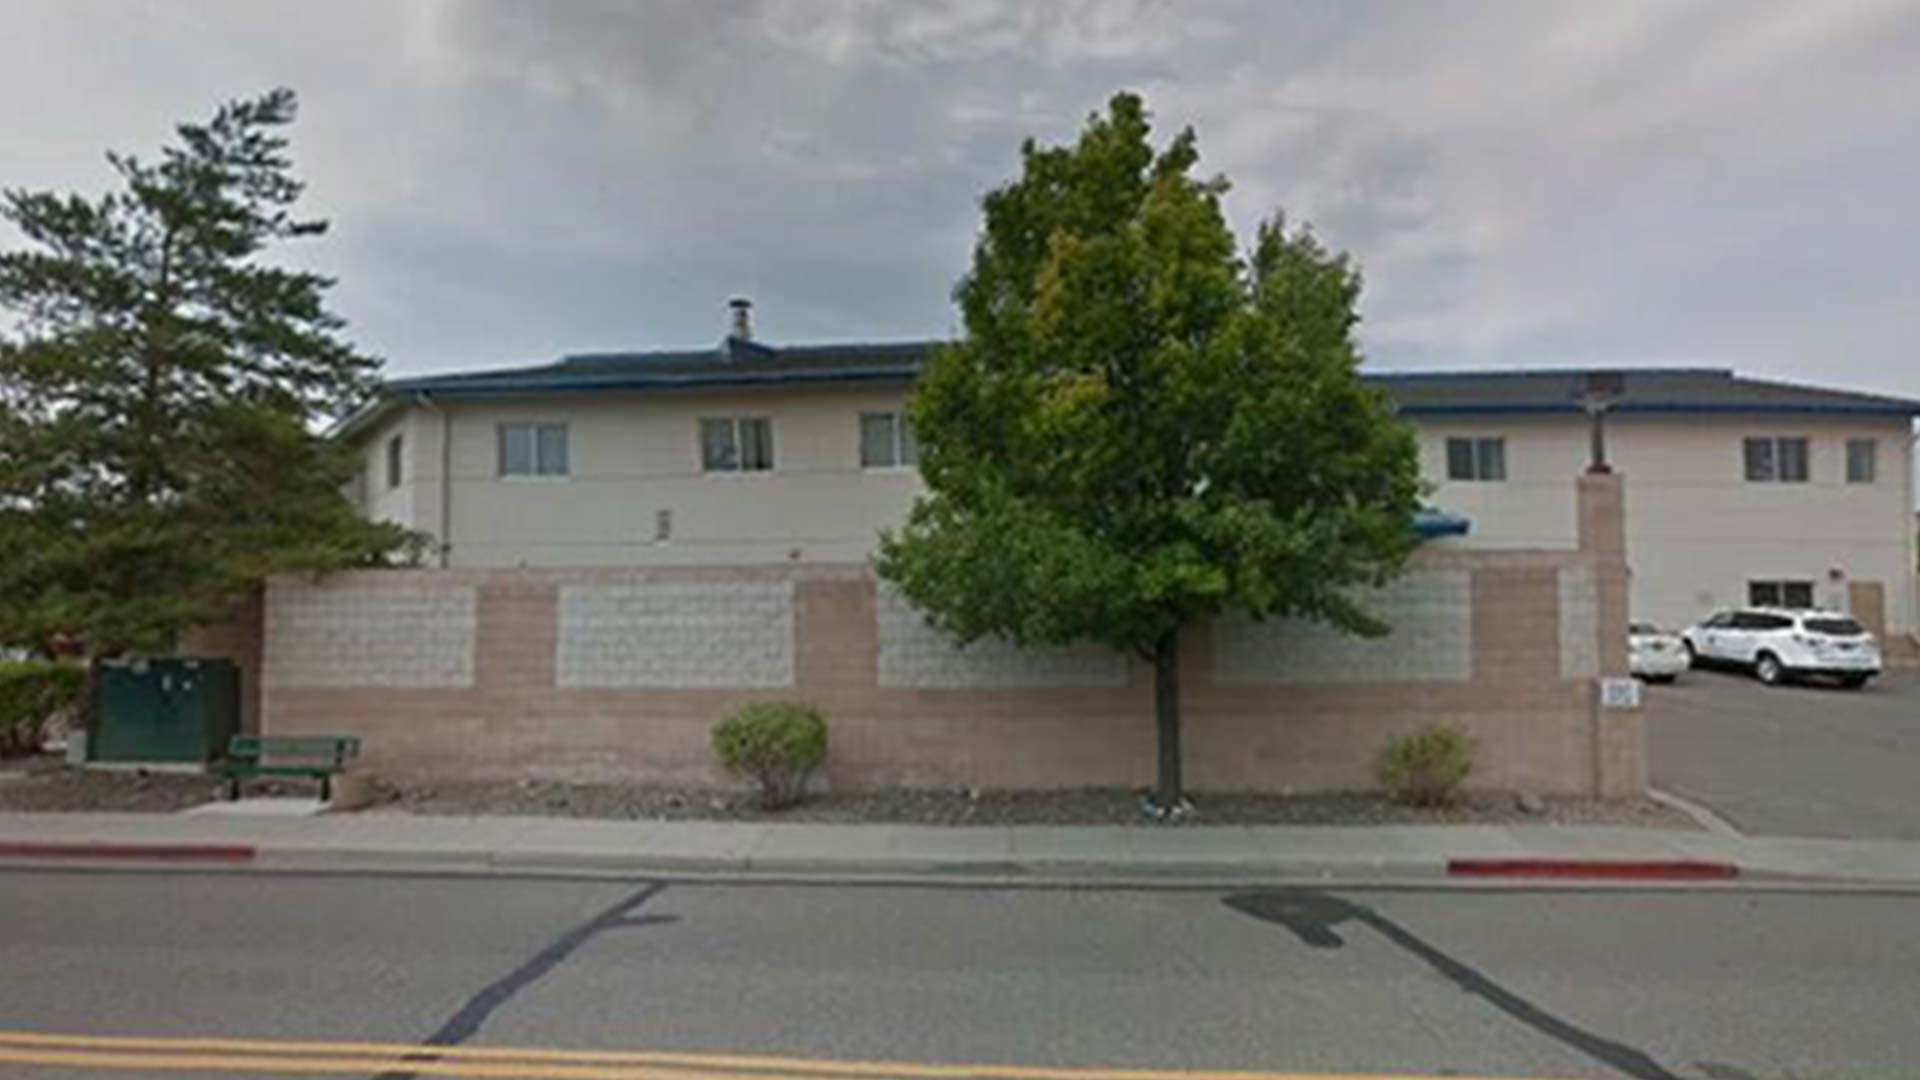 Vitality Center in Carson City